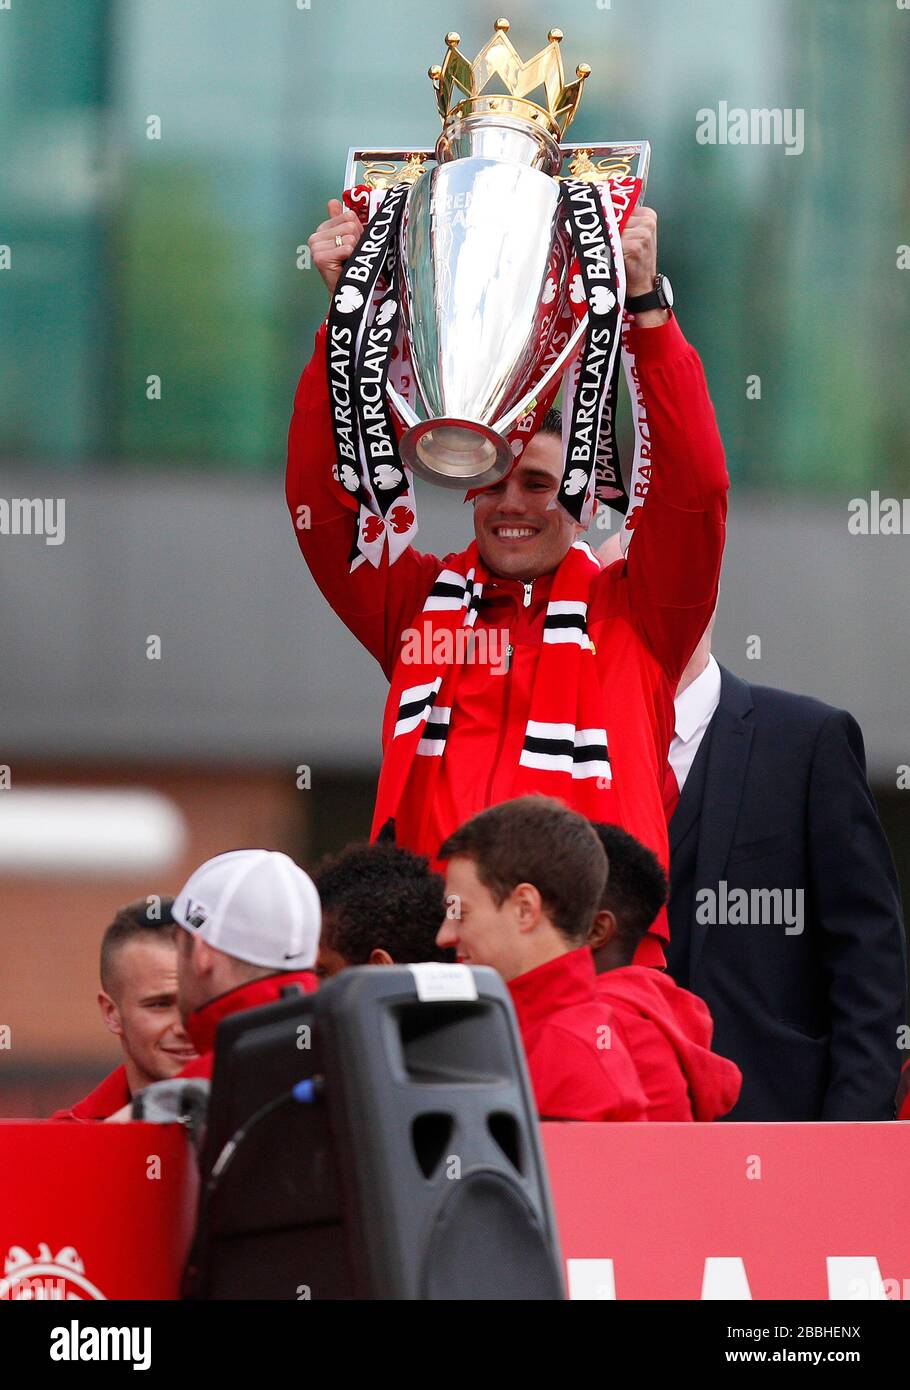 Le Robin van Persie de Manchester United célèbre le trophée lors du défilé des gagnants de la Barclays Premier League à Manchester. Banque D'Images